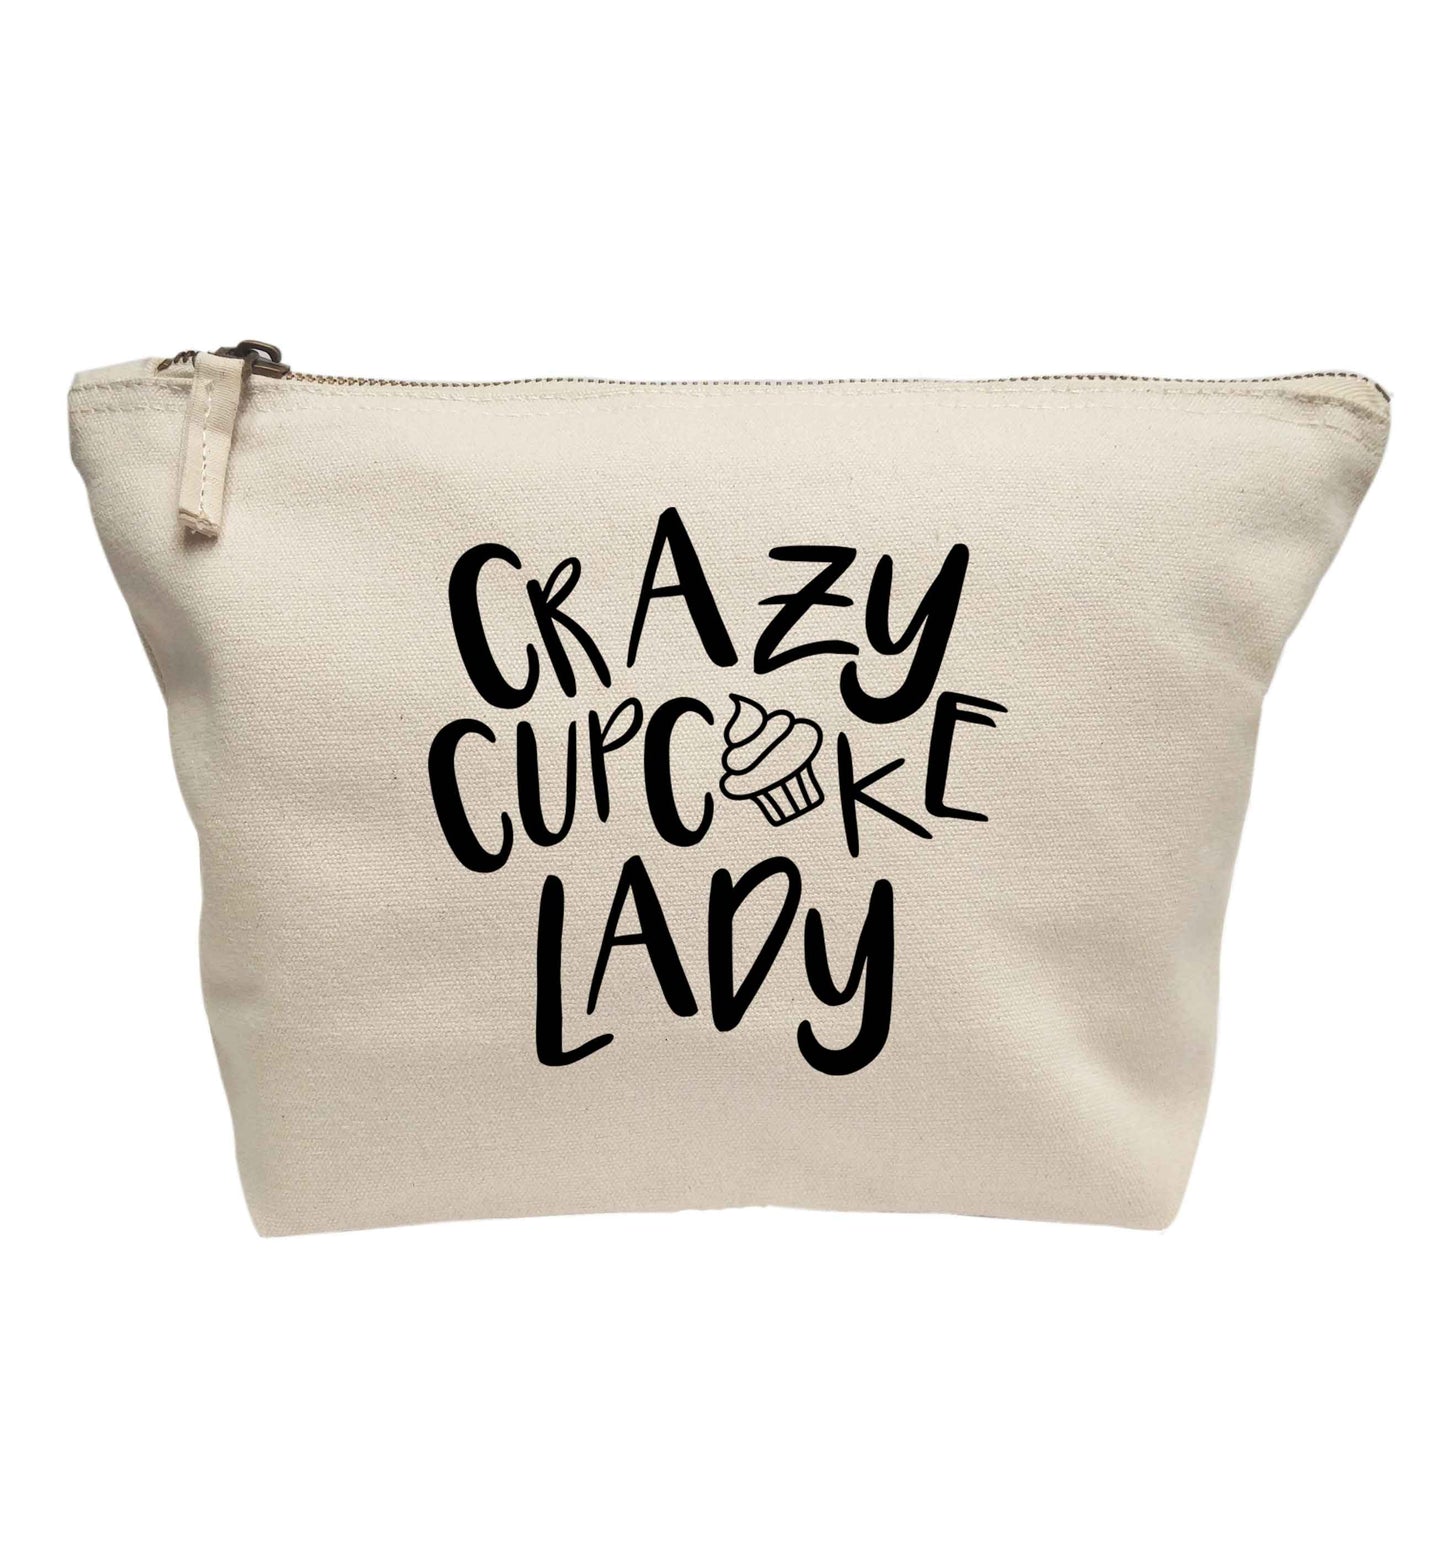 Crazy cupcake lady | makeup / wash bag